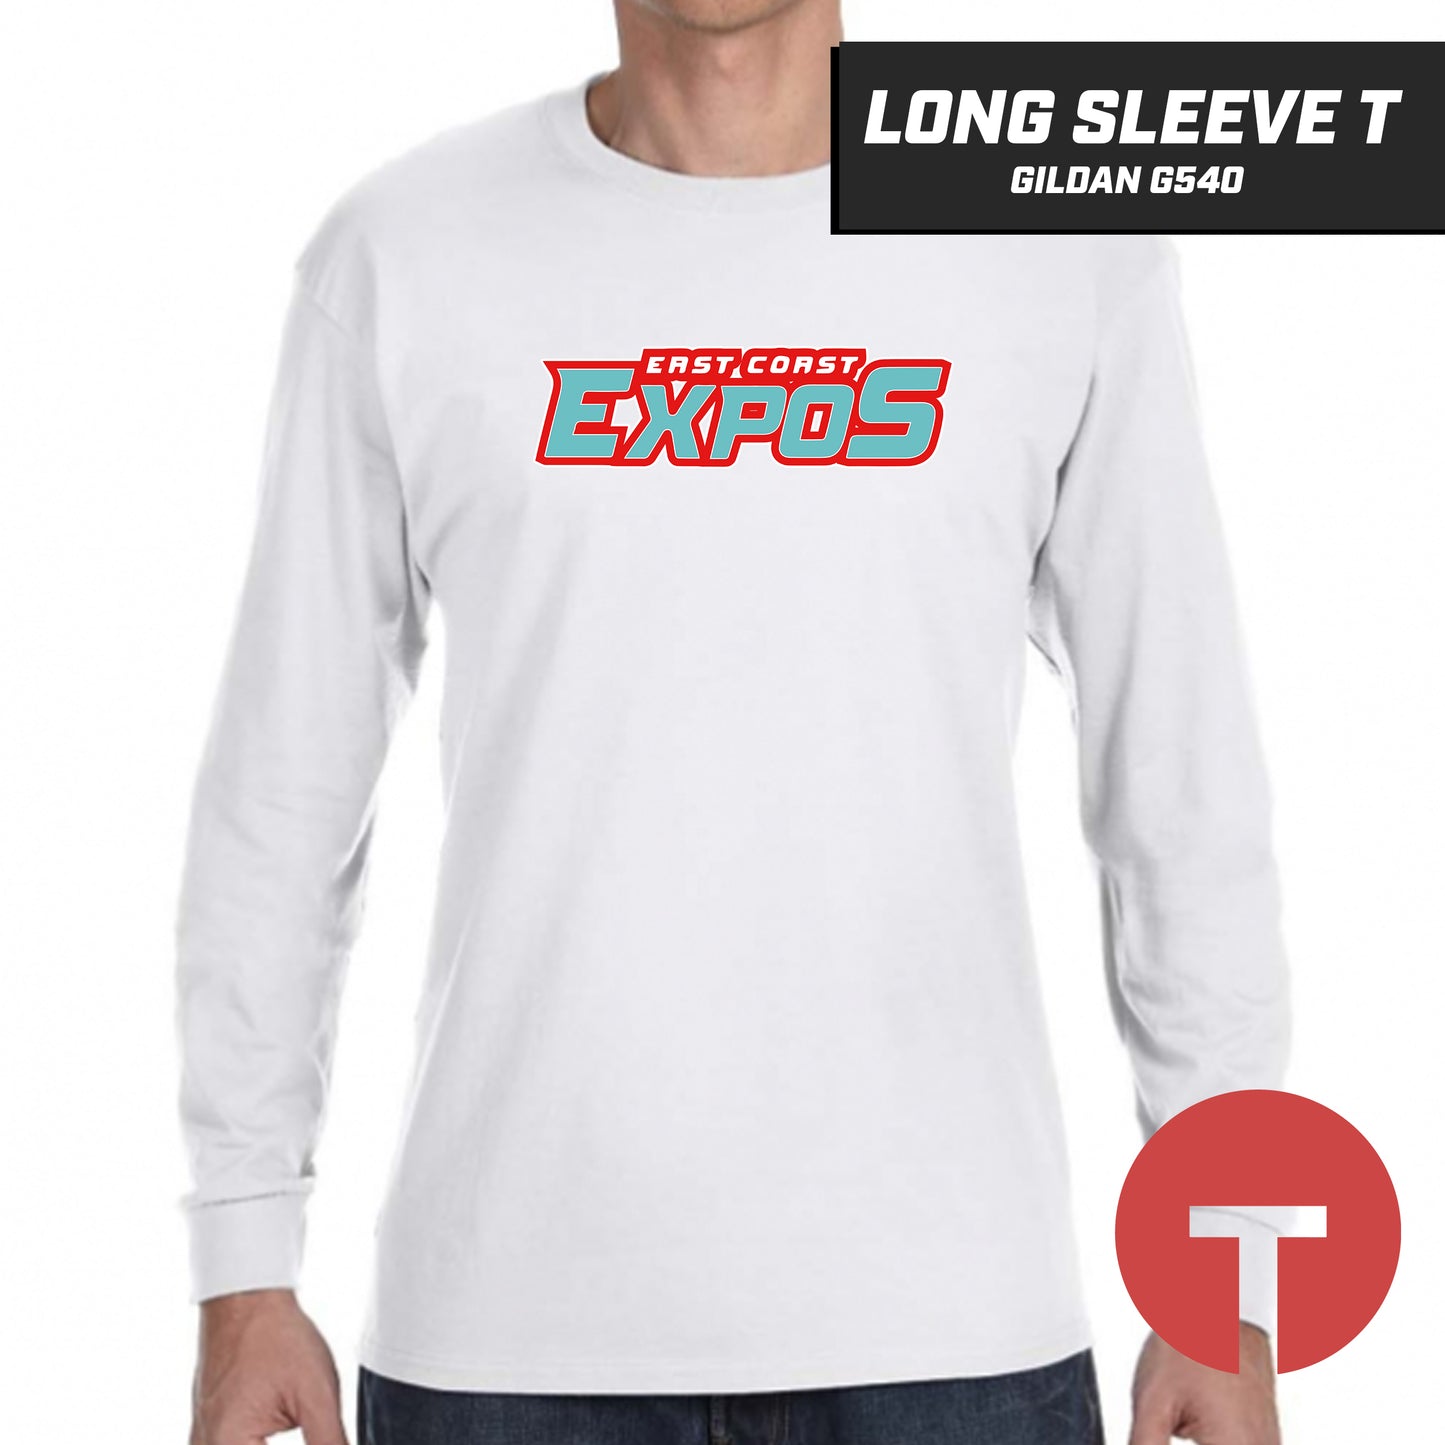 East Coast Expos - Long-Sleeve T-Shirt Gildan G540